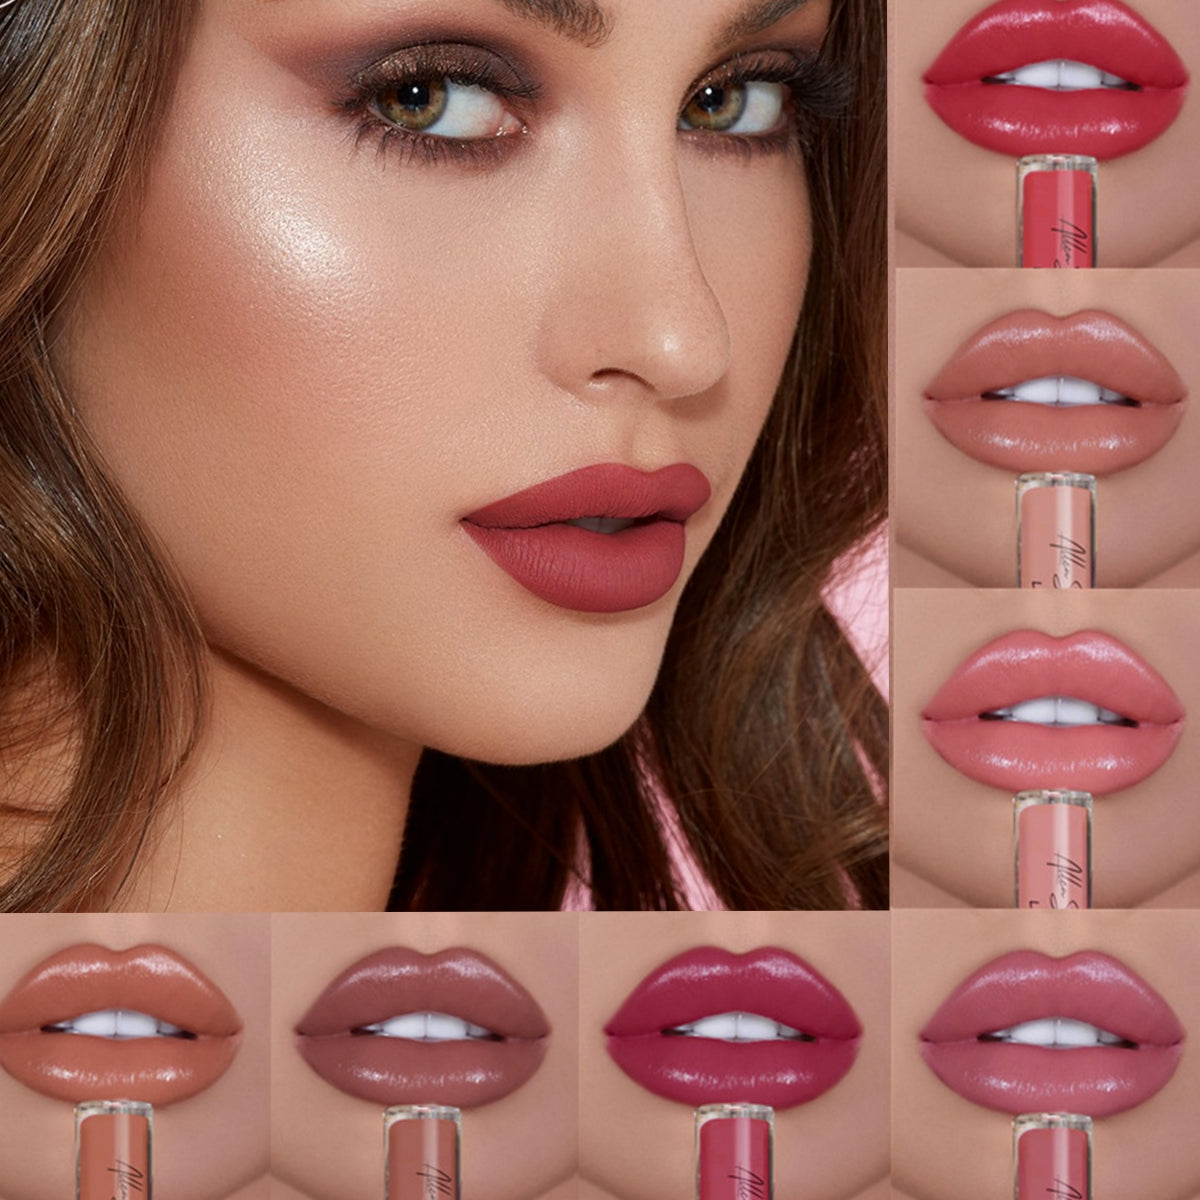 Riceel® 12 Color  Lipstick Waterproof 🎉 Buy 2 Get 1 Free 🎉